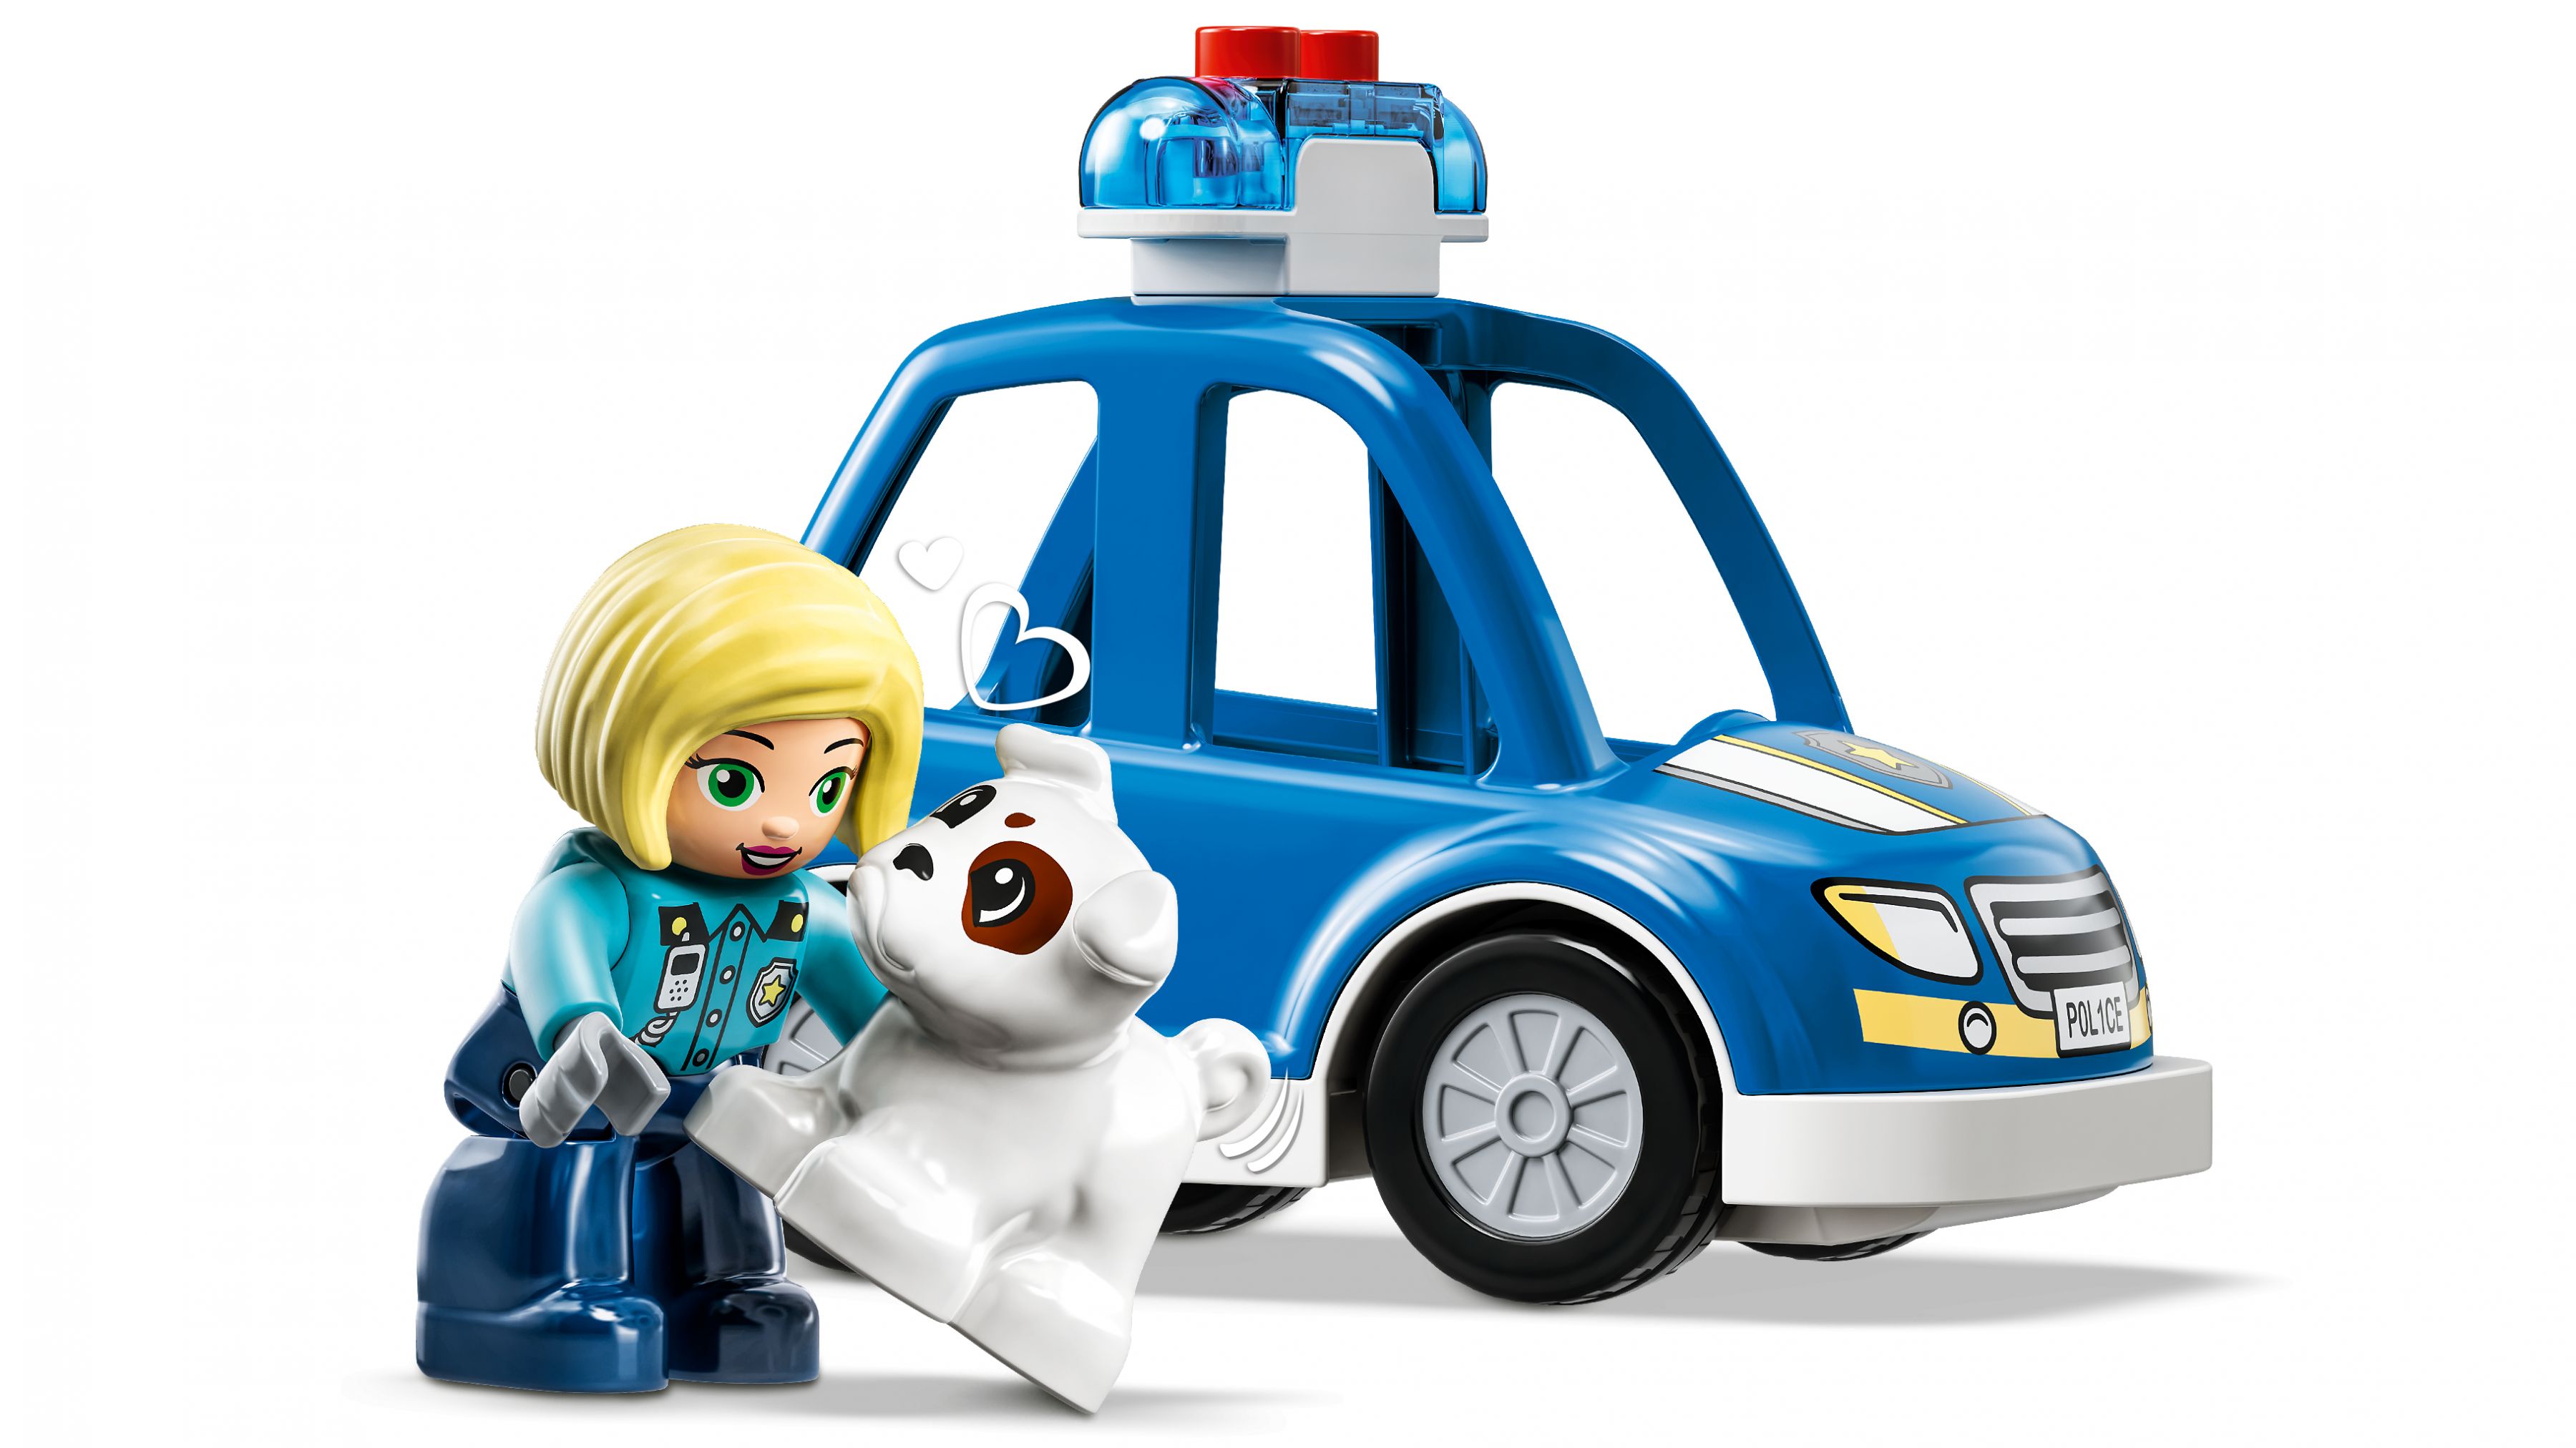 LEGO Duplo 10959 Polizeistation mit Hubschrauber LEGO_10959_WEB_SEC06_NOBG.jpg